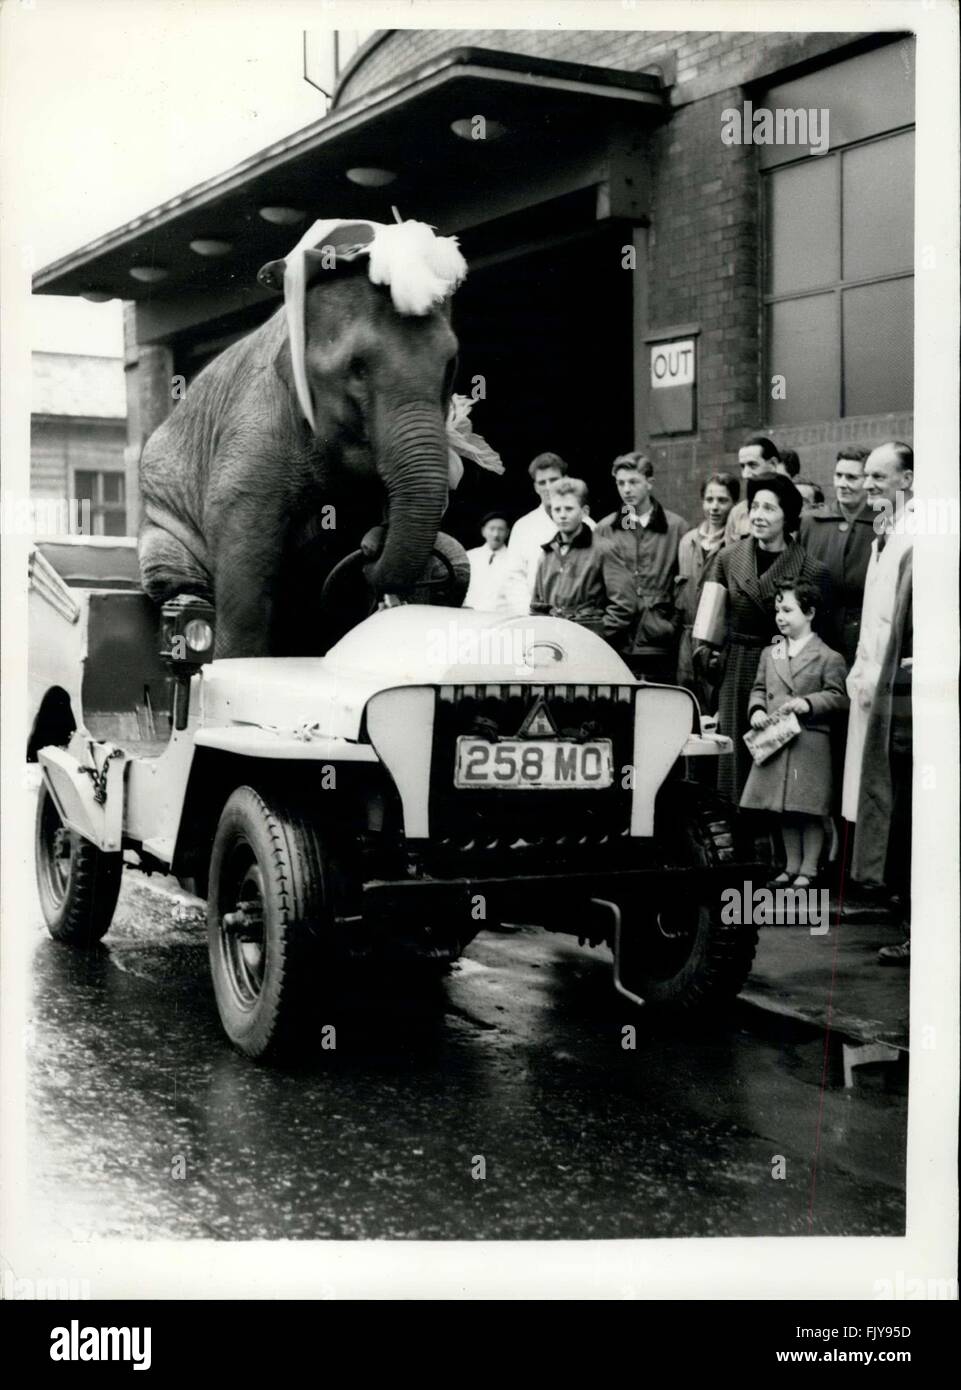 1952 - animaux arrivent pour Bertram Mills Circus Le pilote d'éléphants : Les animaux de la Bertram Mills quartiers d'hiver à Ascot - arrivé en train à Addison Road Station aujourd'hui - pour le Bertram Mills Circus, qui s'ouvre à l'Olympia le 20 décembre. Photo montre ''Kam'' un enfant de quatre ans -éléphant surpris les spectateurs à l'Olympia aujourd'hui qu'il est passé au volant d'un véhicule - et a démontré son preess comme chauffeur. L'éléphant a poussé en deuxième vitesse. © Keystone Photos USA/ZUMAPRESS.com/Alamy Live News Banque D'Images